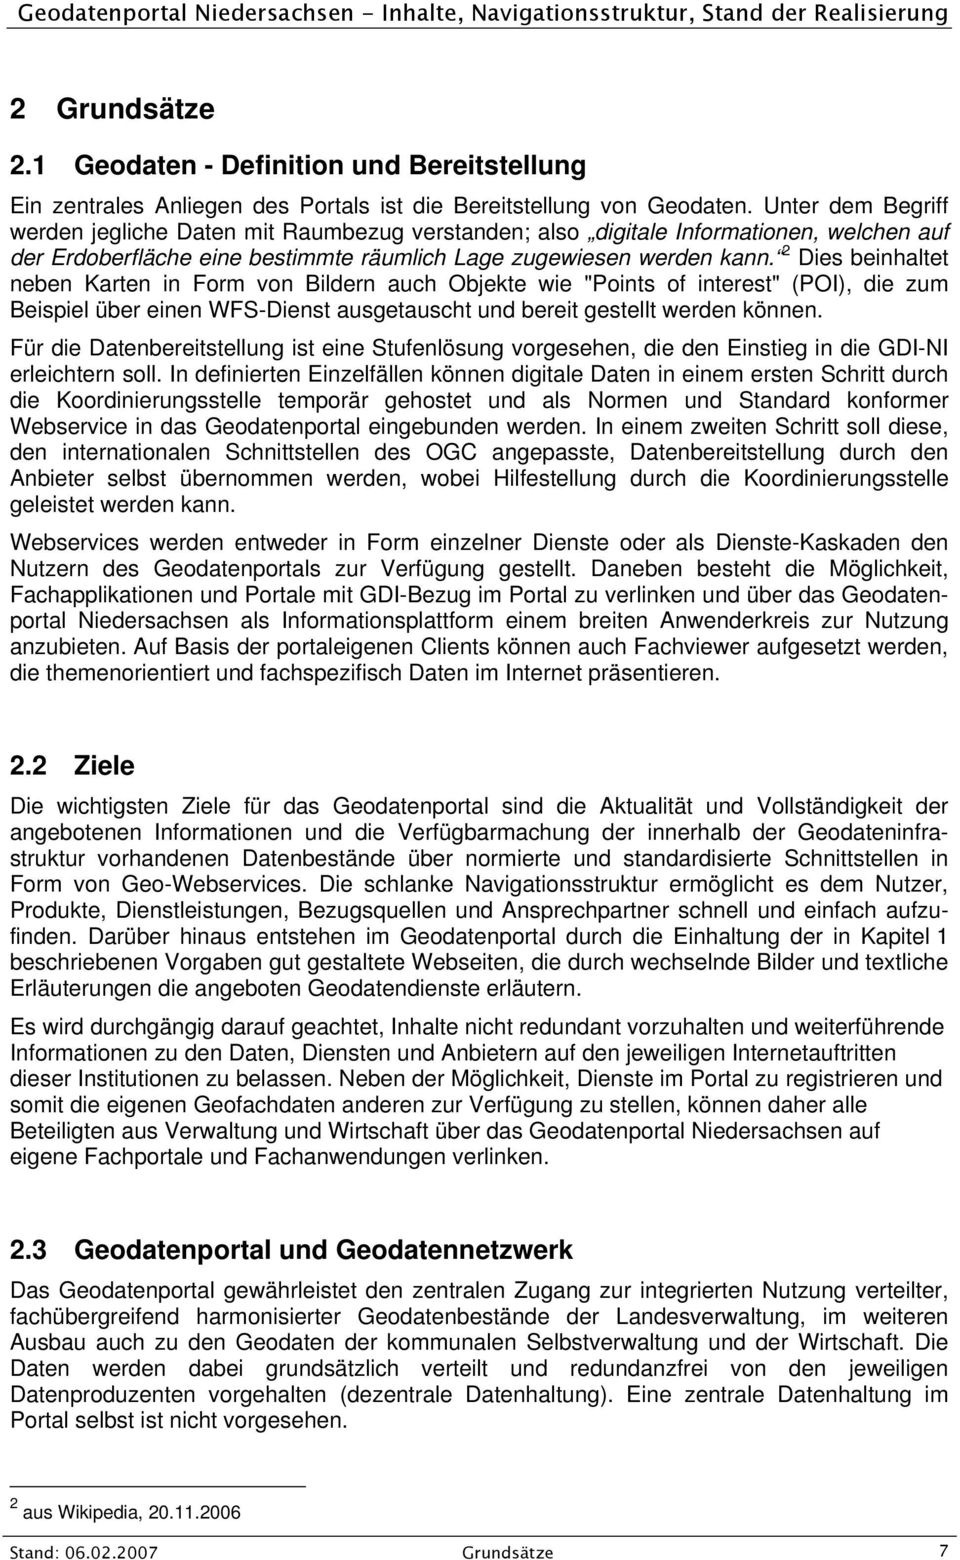 Geodatenportal Niedersachsen   PDF Kostenfreier Download